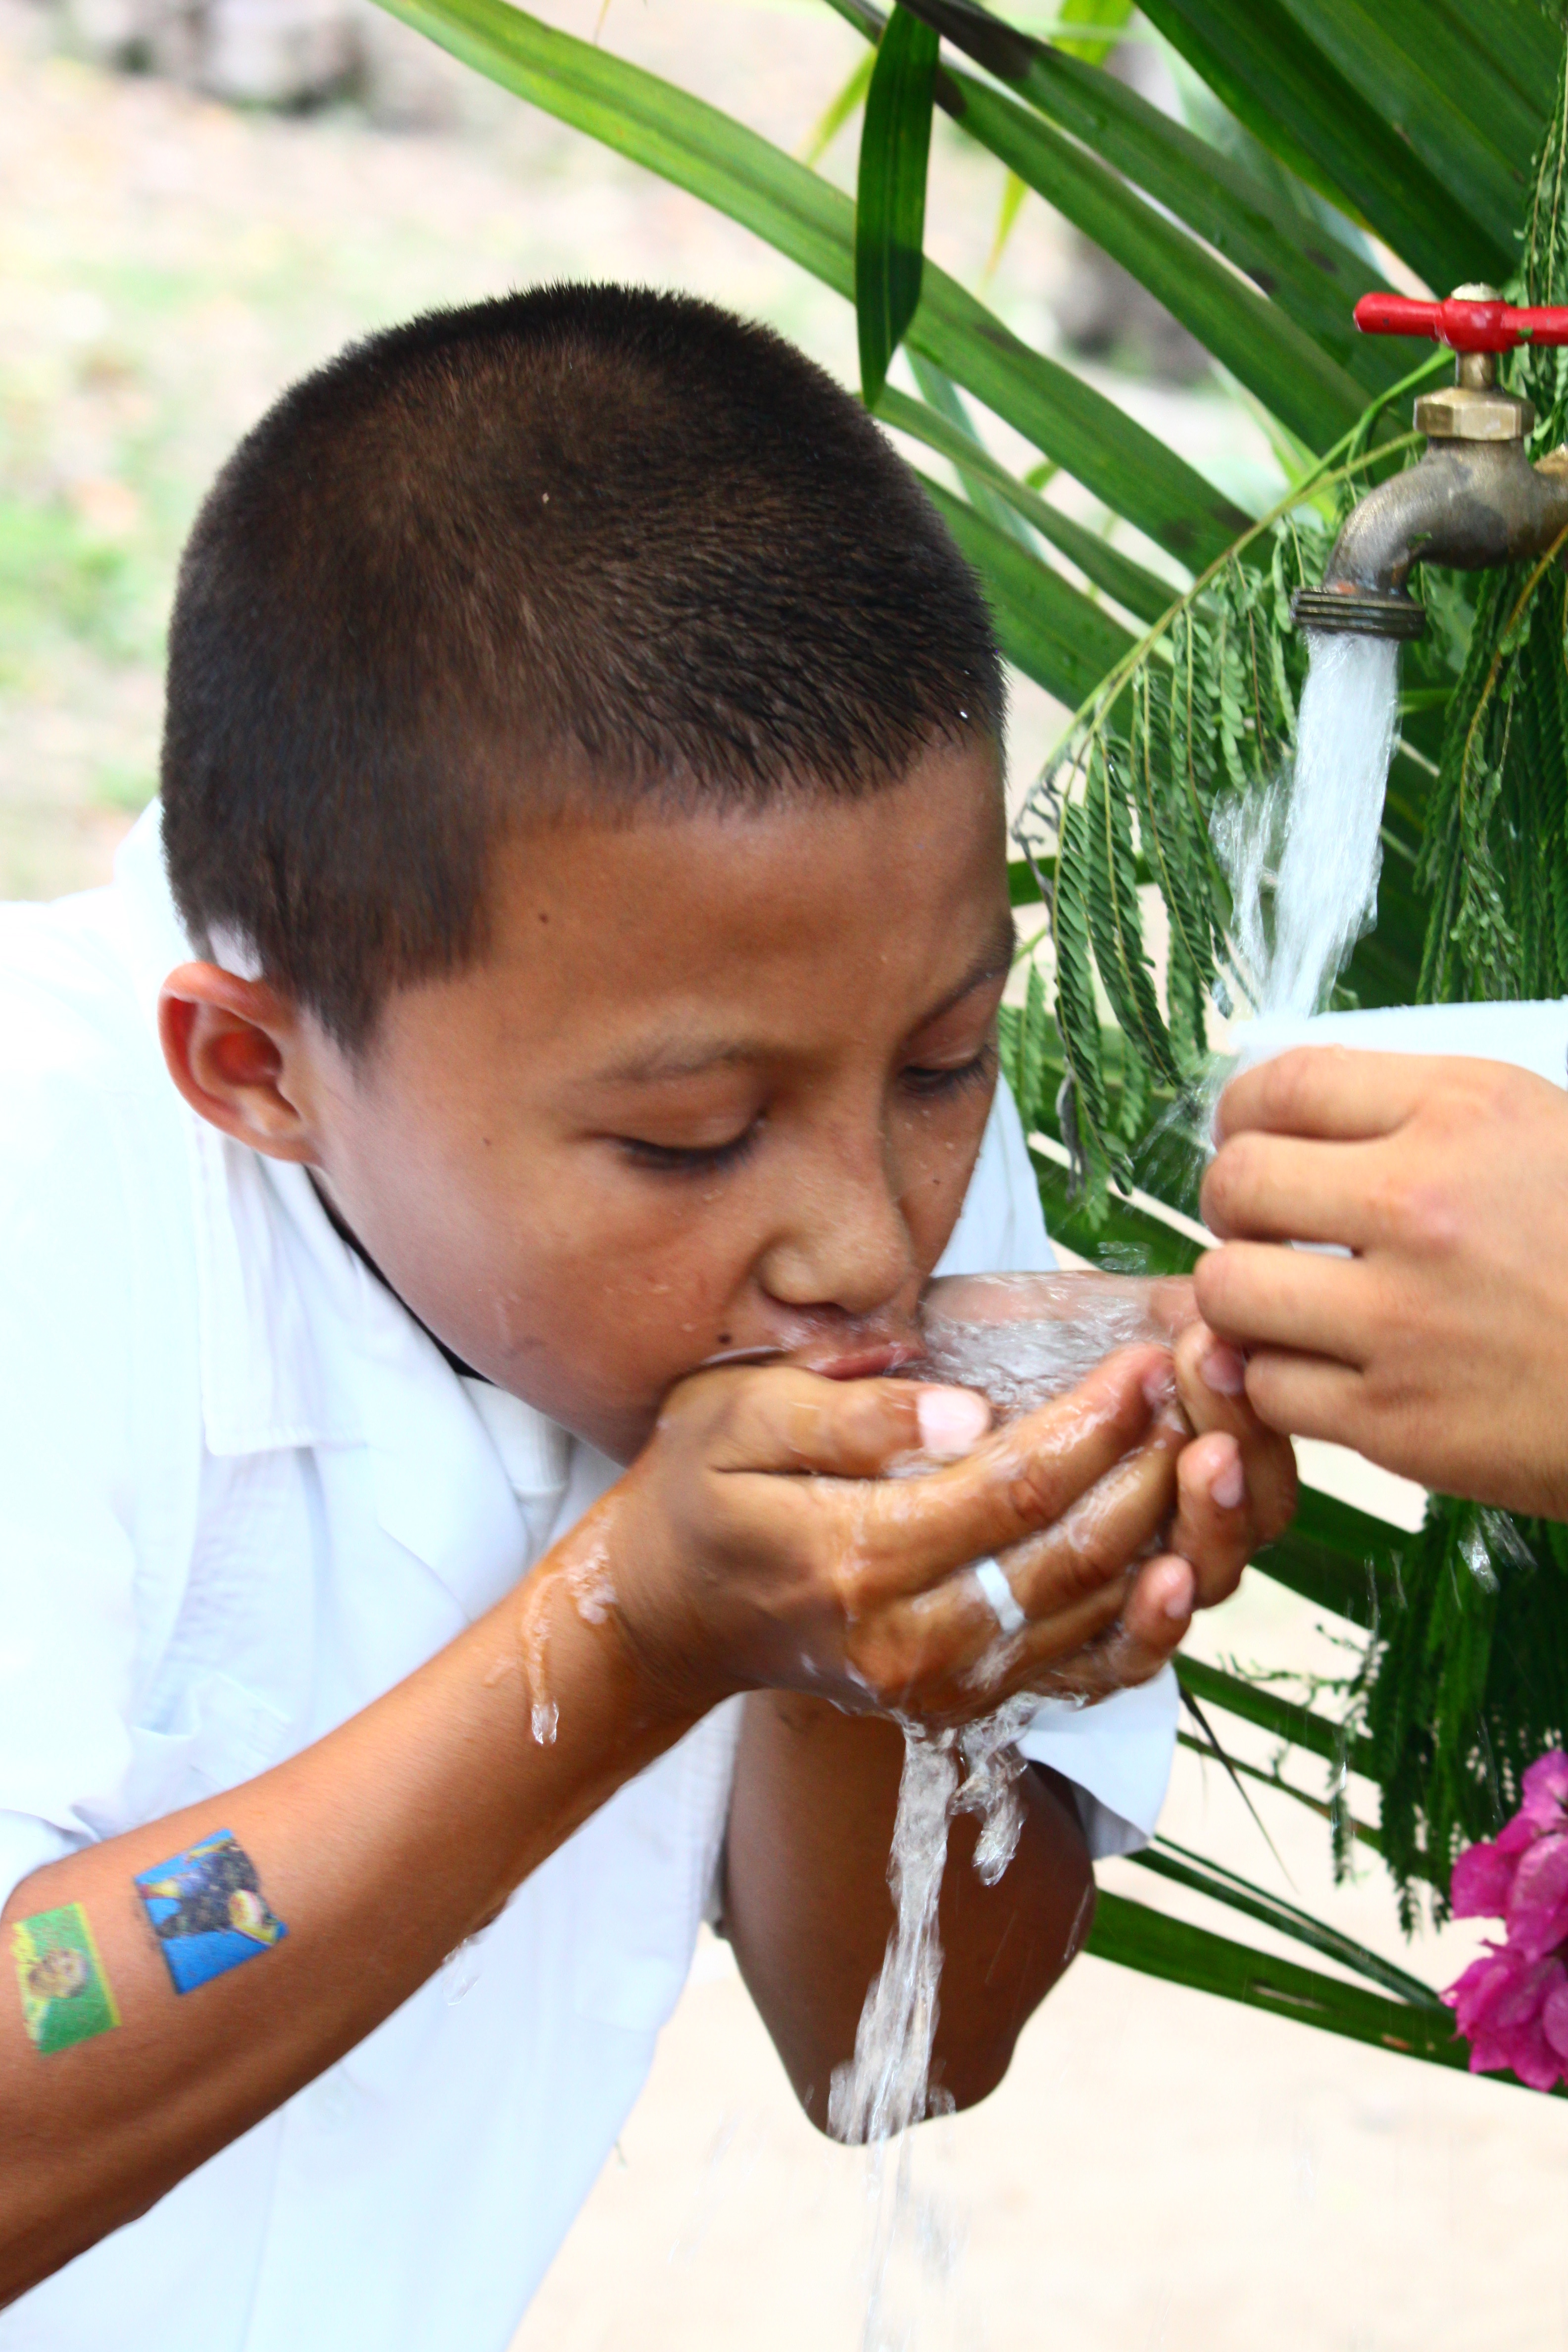 Join our team in Honduras: Water Brigades Program Coordinator